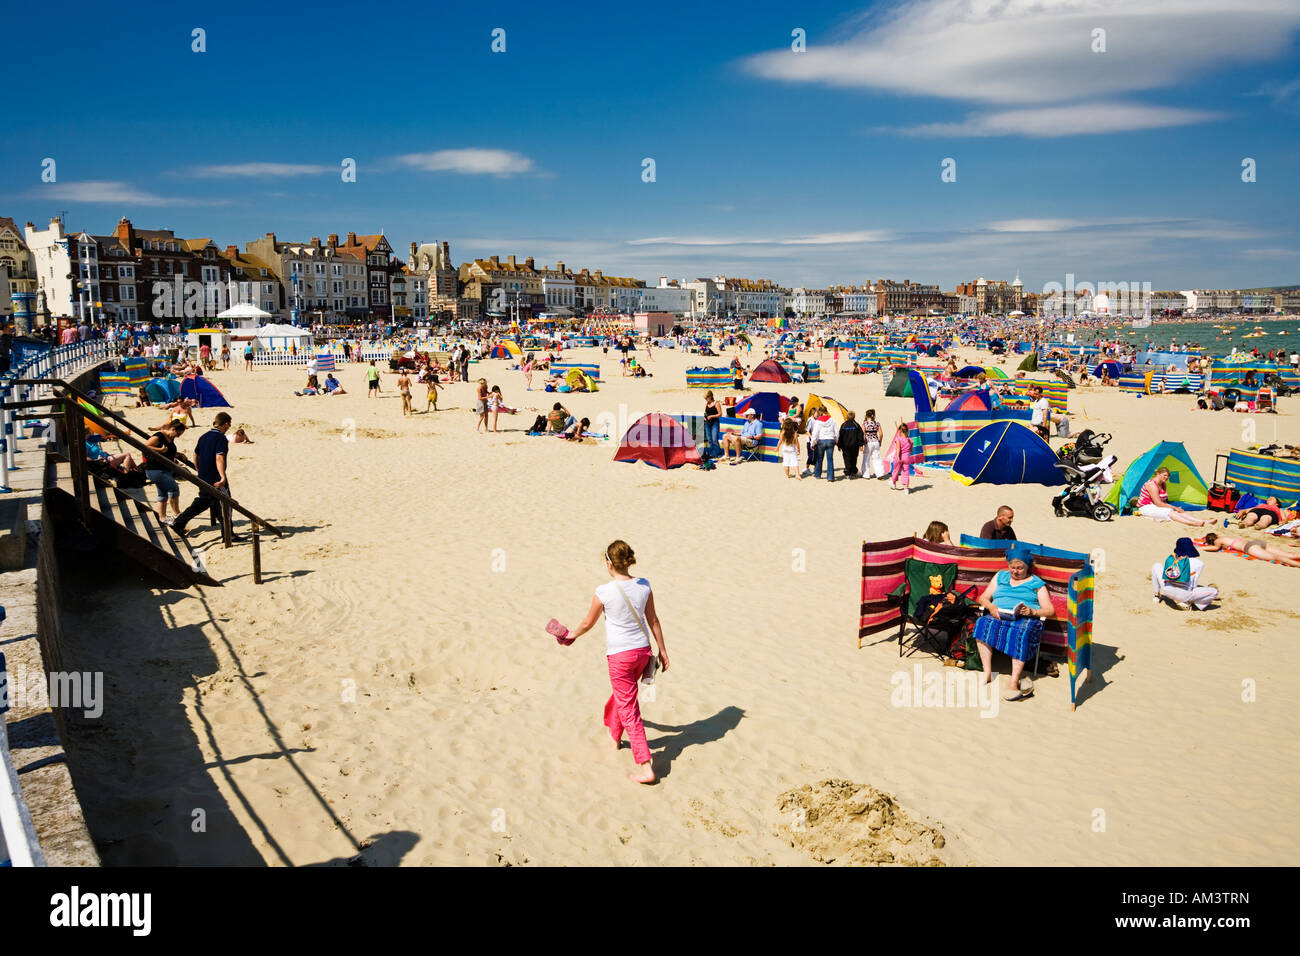 Les gens en train de bronzer sur une plage en été, la côte du Dorset, Angleterre, RU Banque D'Images